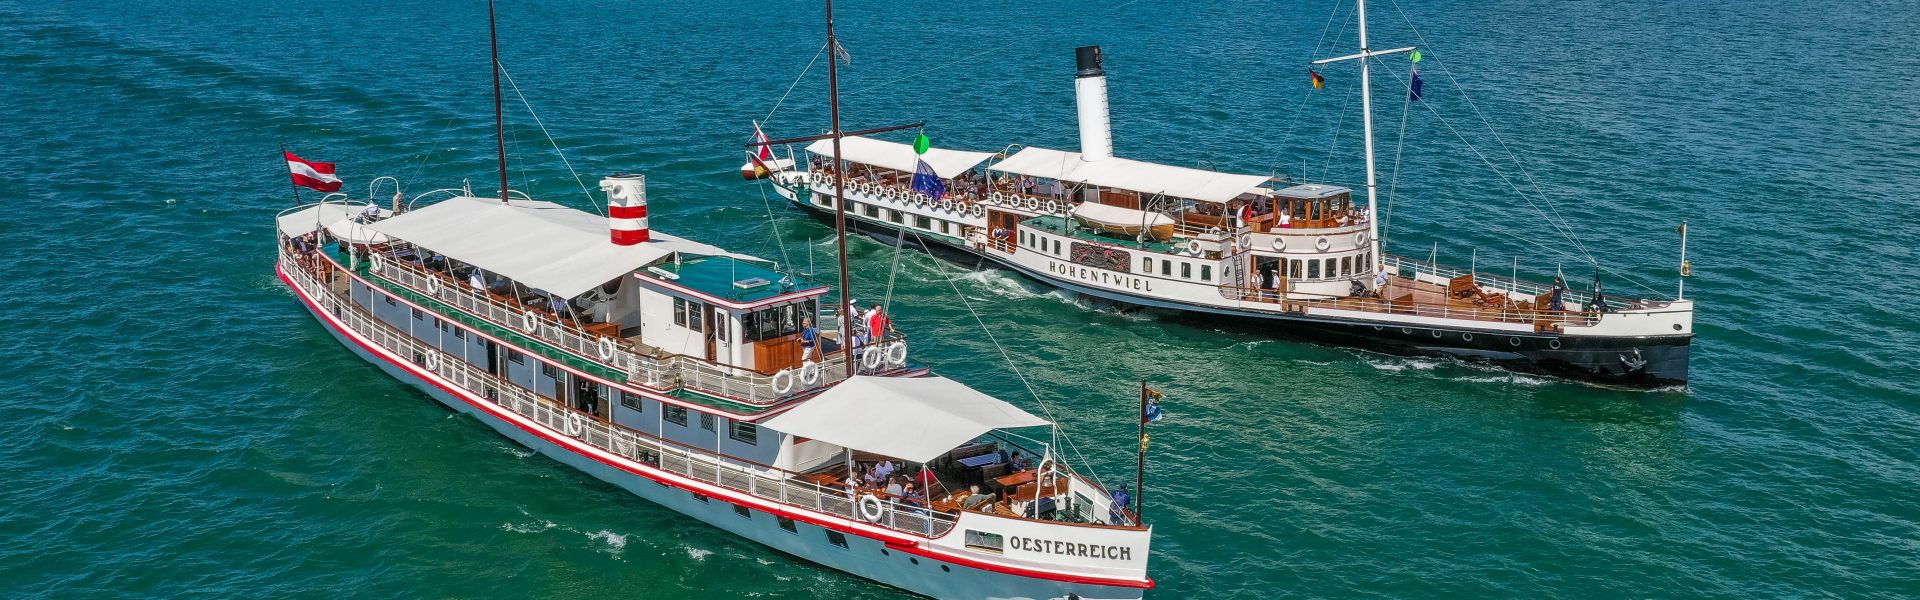 (c) Historische Schifffahrt Bodensee